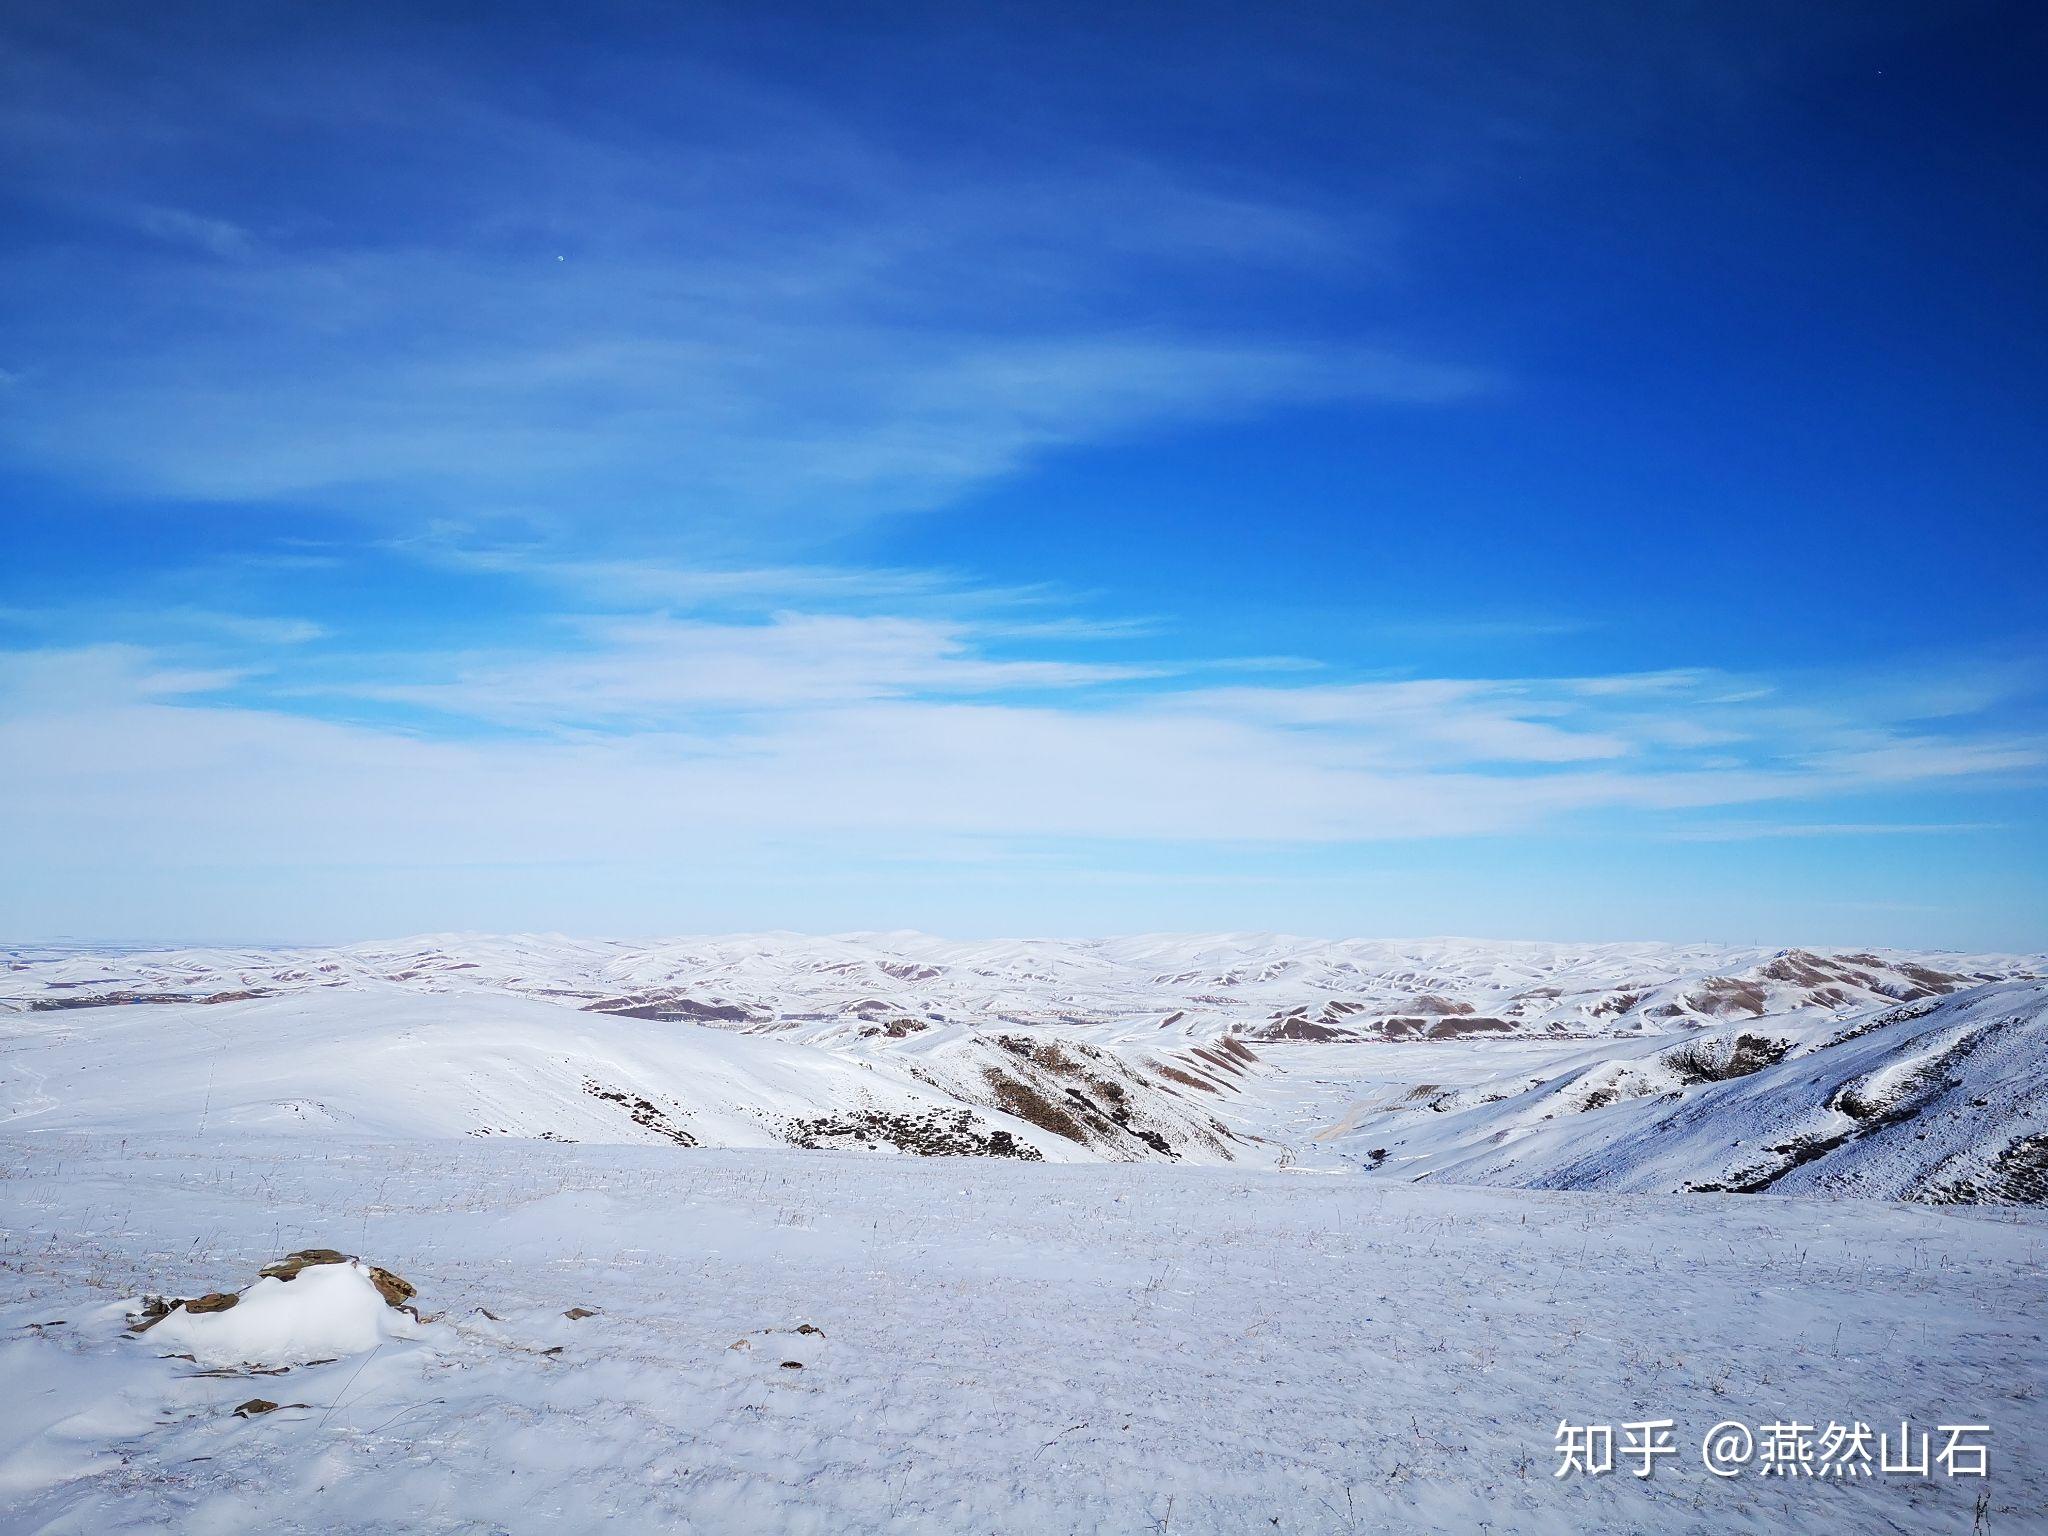 你应该在冬天去次内蒙古 感受最纯净的天路之旅[23P]|无奇不有 - 武当休闲山庄 - 稳定,和谐,人性化的中文社区